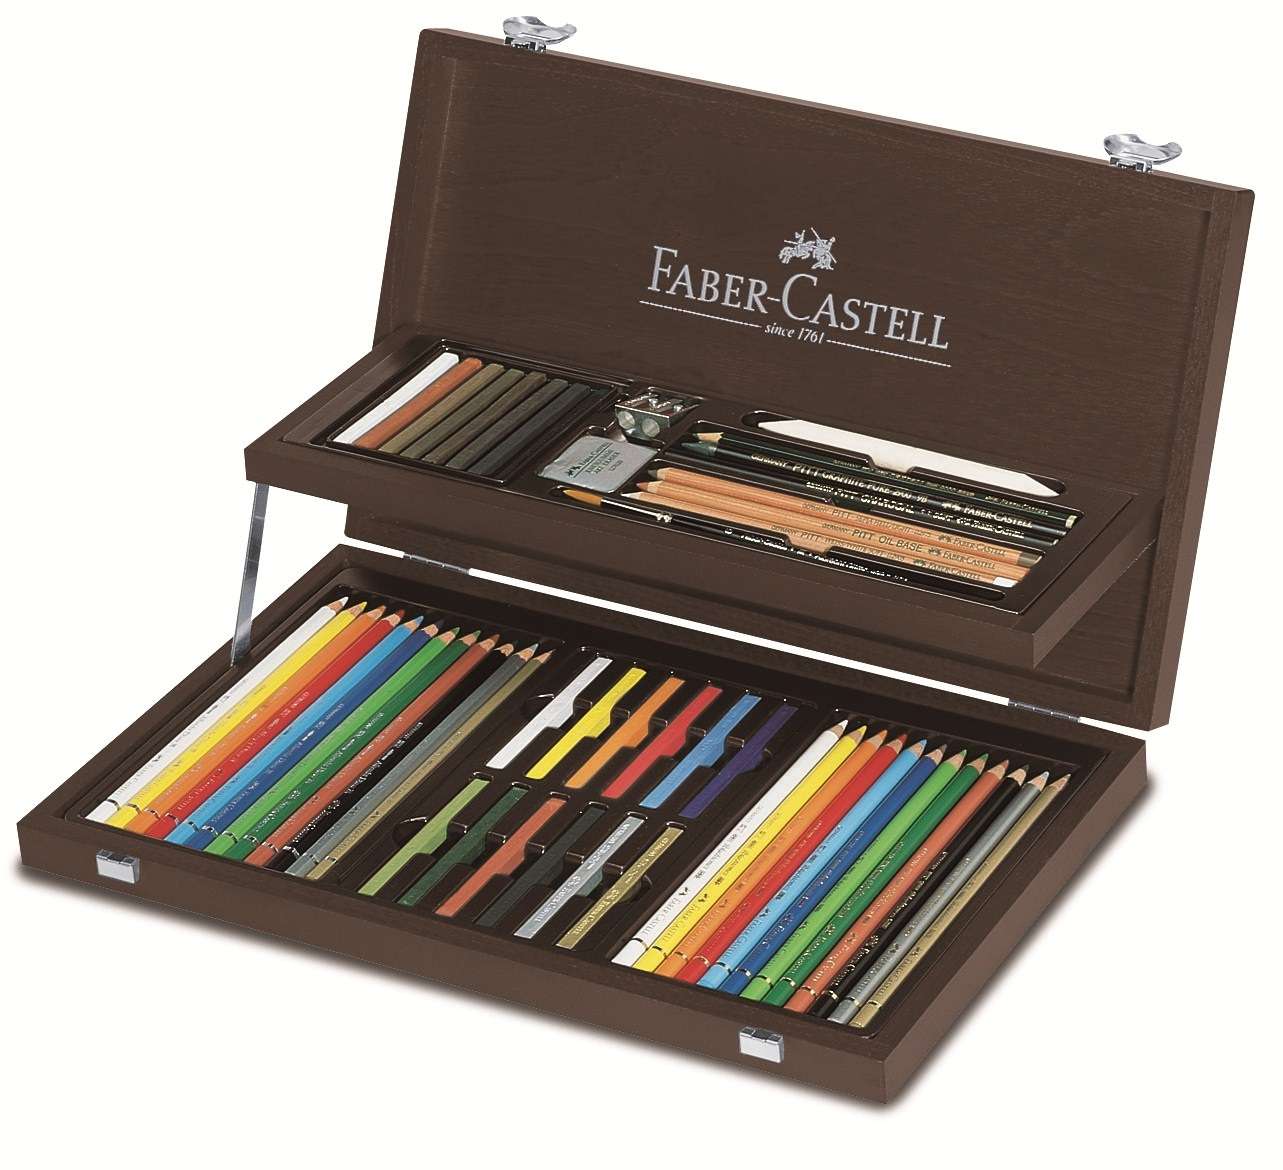 Faber-Castell - Art & Graphic COMPENDIUM wood case (110088)